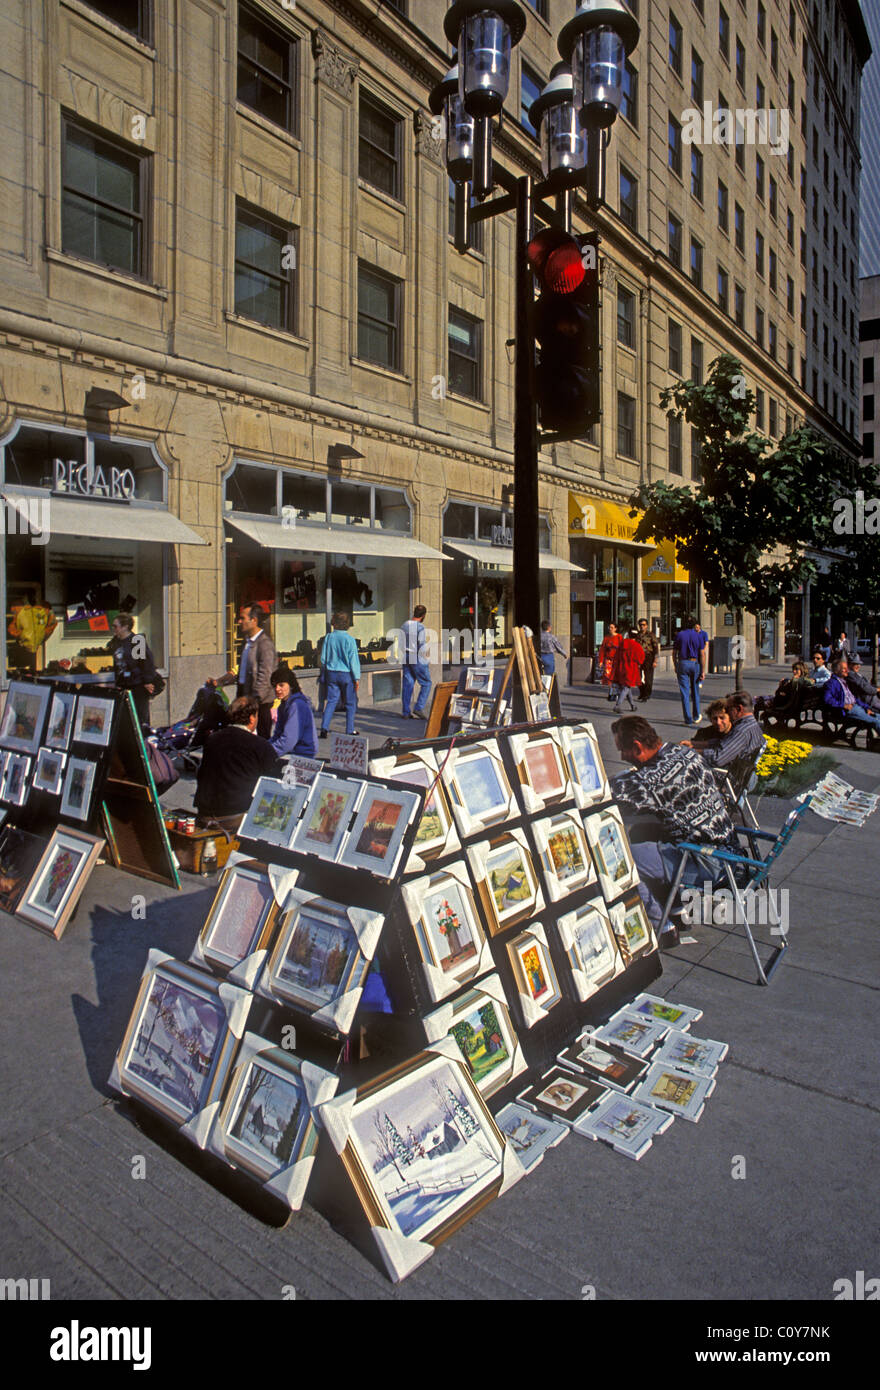 Vendeur de rue, artiste d'art de vente le long de l'avenue McGill College de la ville de Montréal Québec Canada Amérique du Nord Banque D'Images